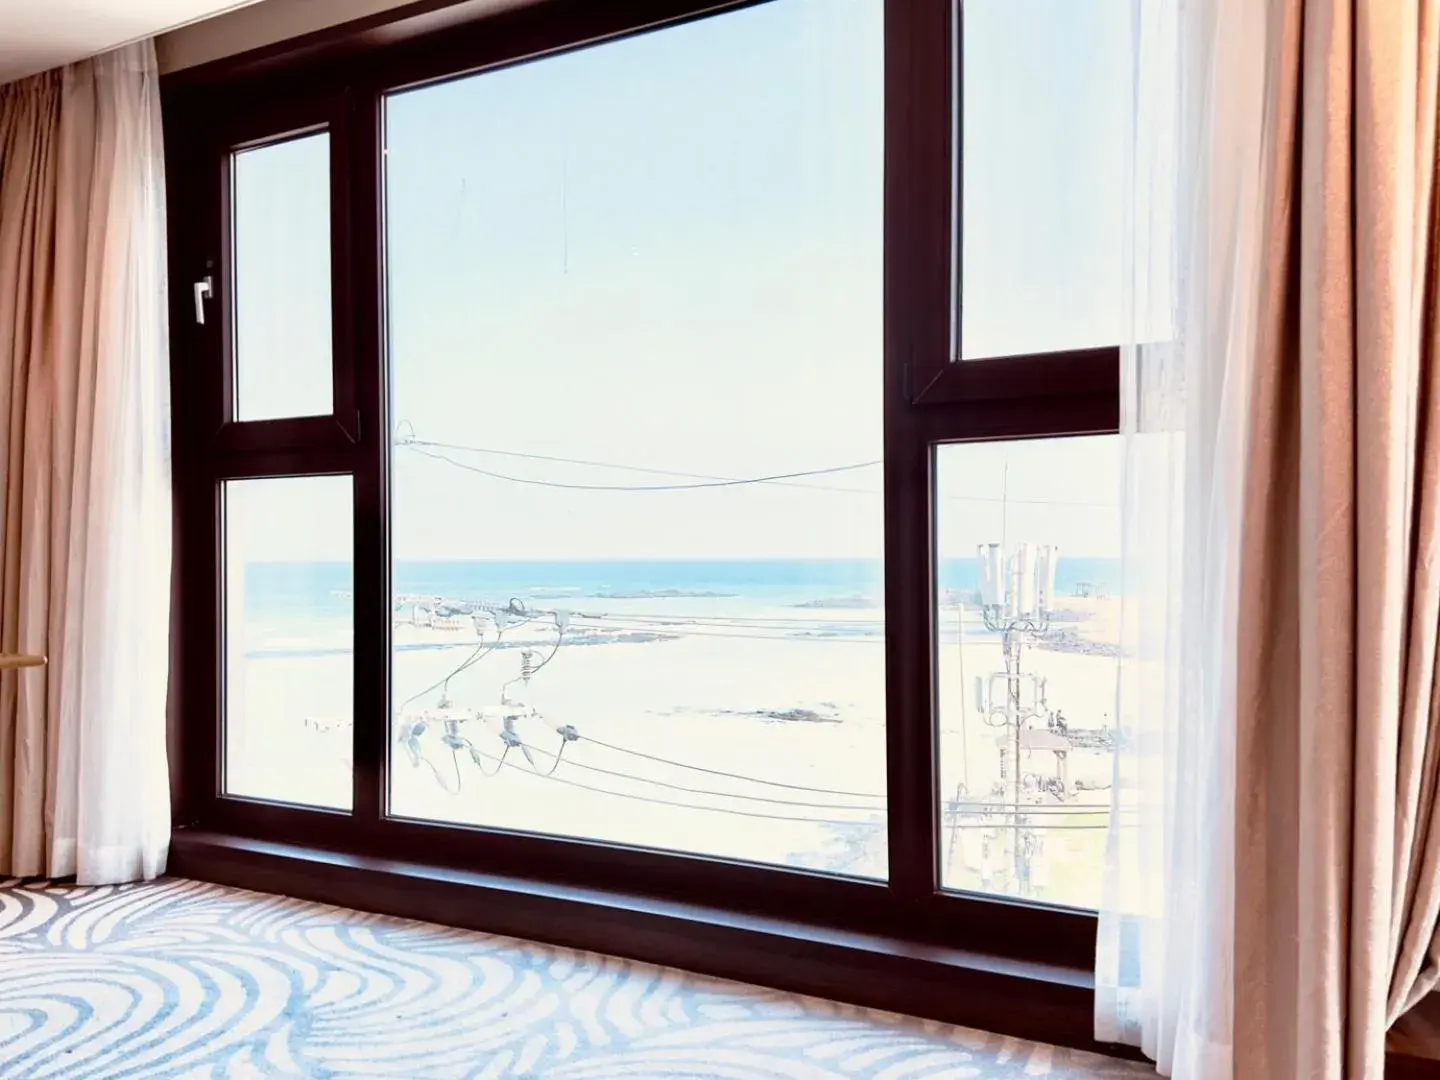 Sea view in Saint Beach Hotel